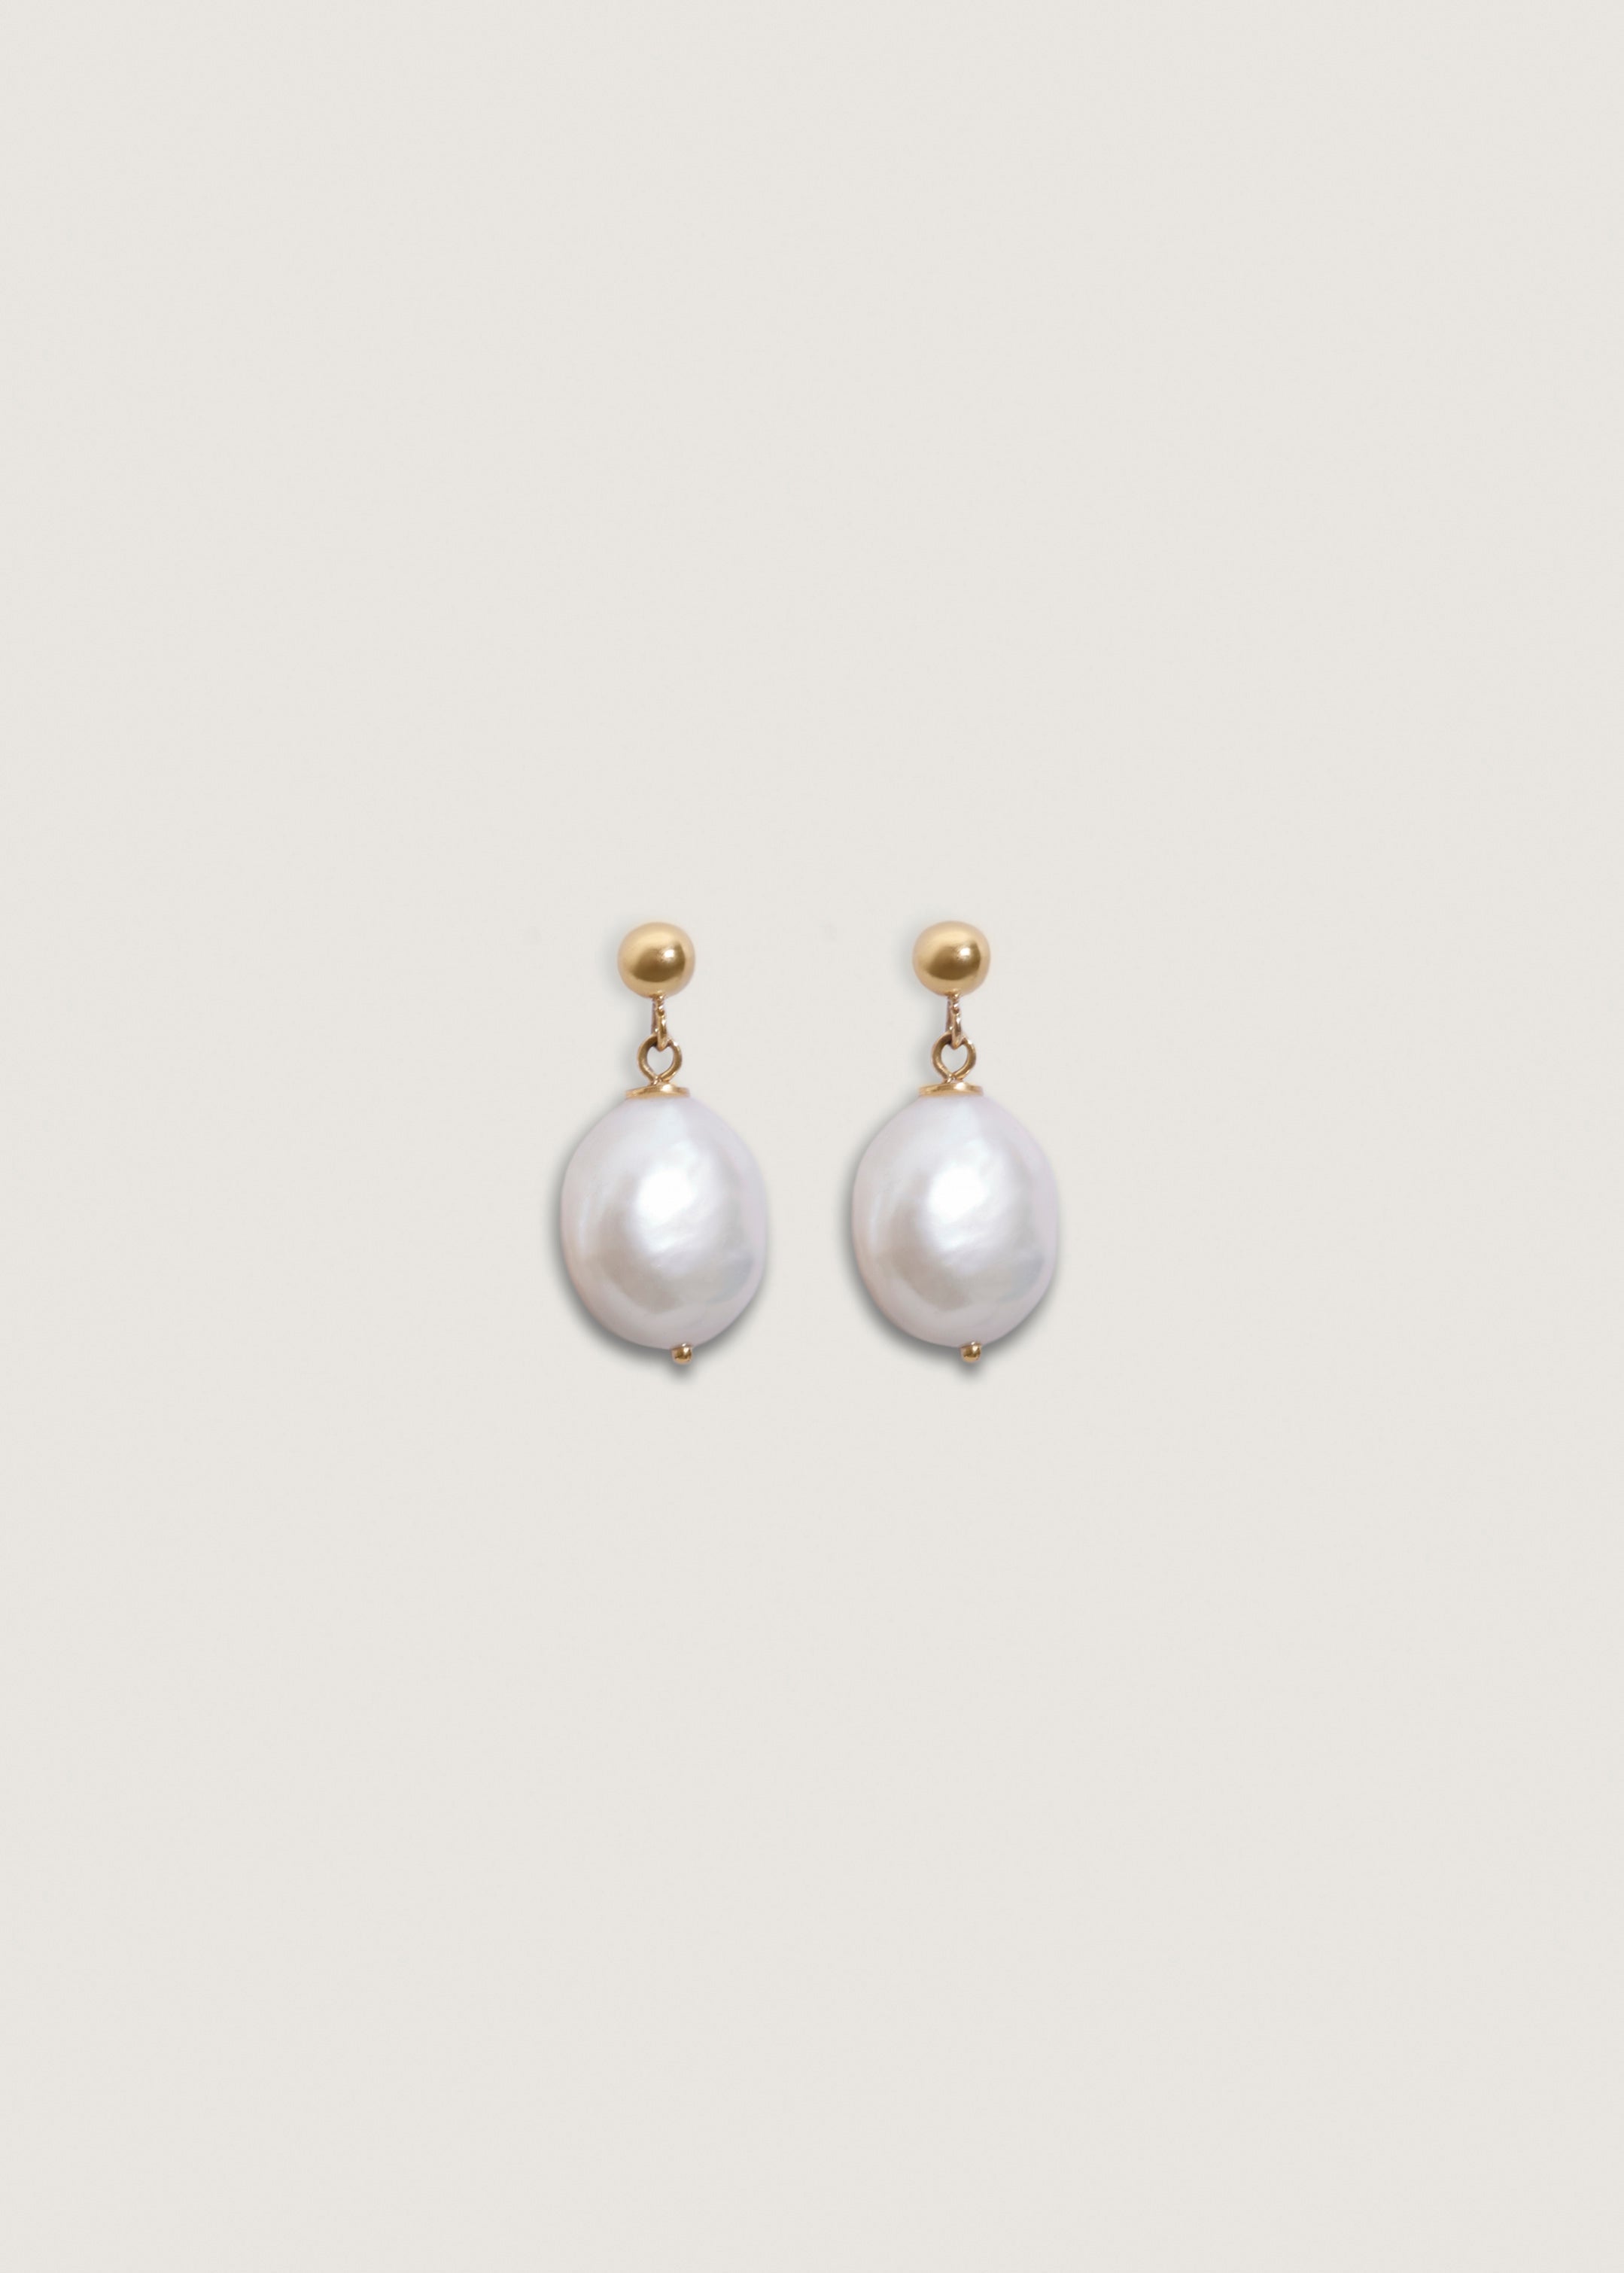 alt="Baroque Pearl Drop Earrings"